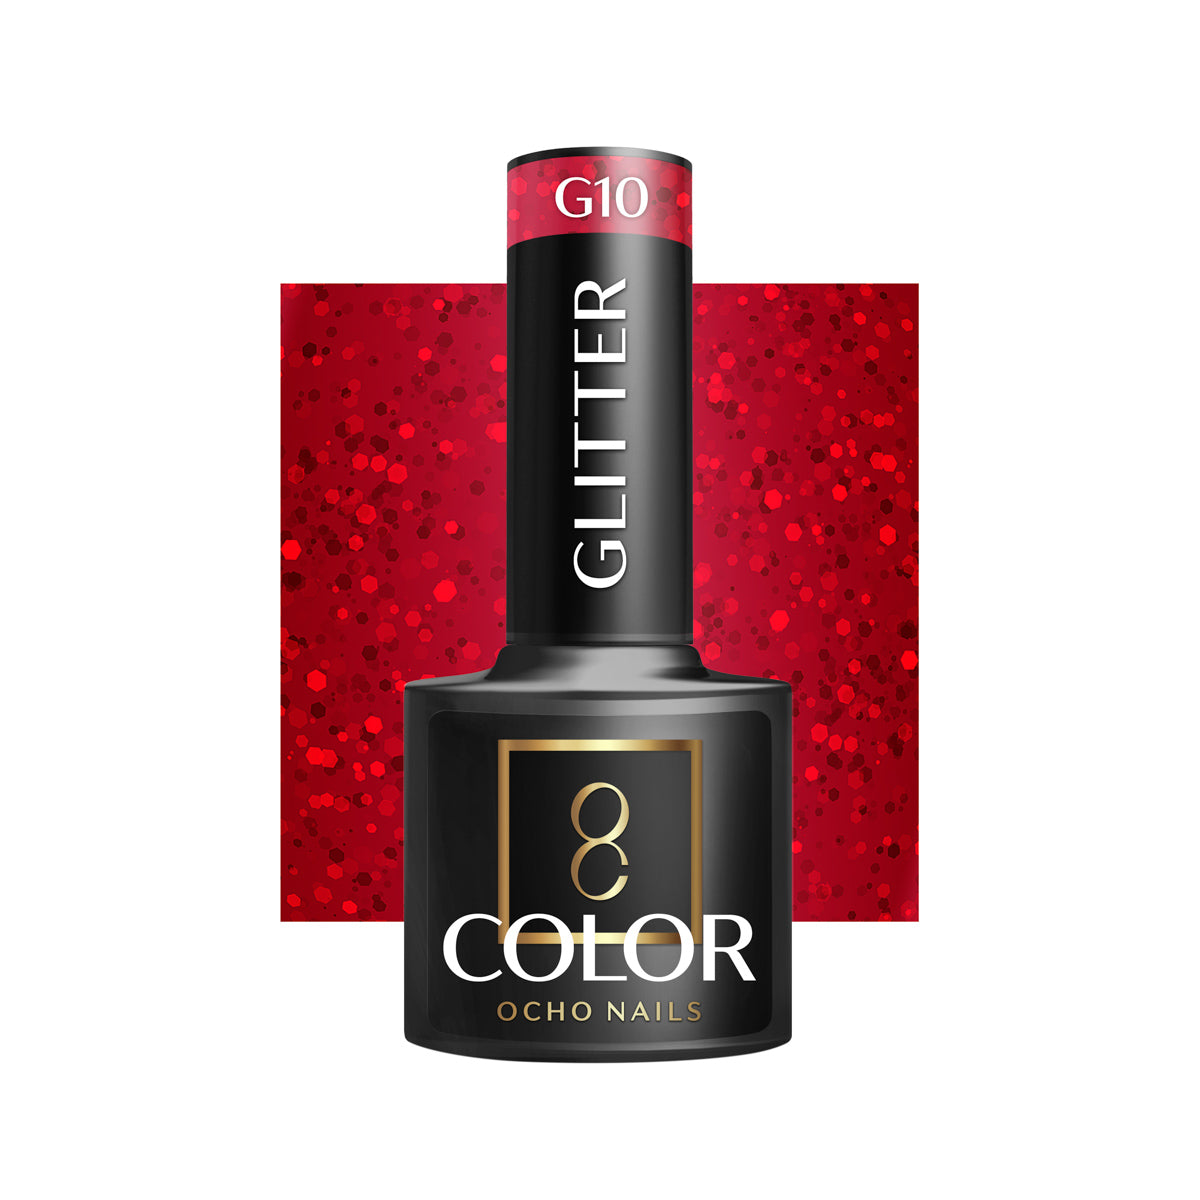 OCHO NAILS Hybrid nail polish glitter G10 -5 g